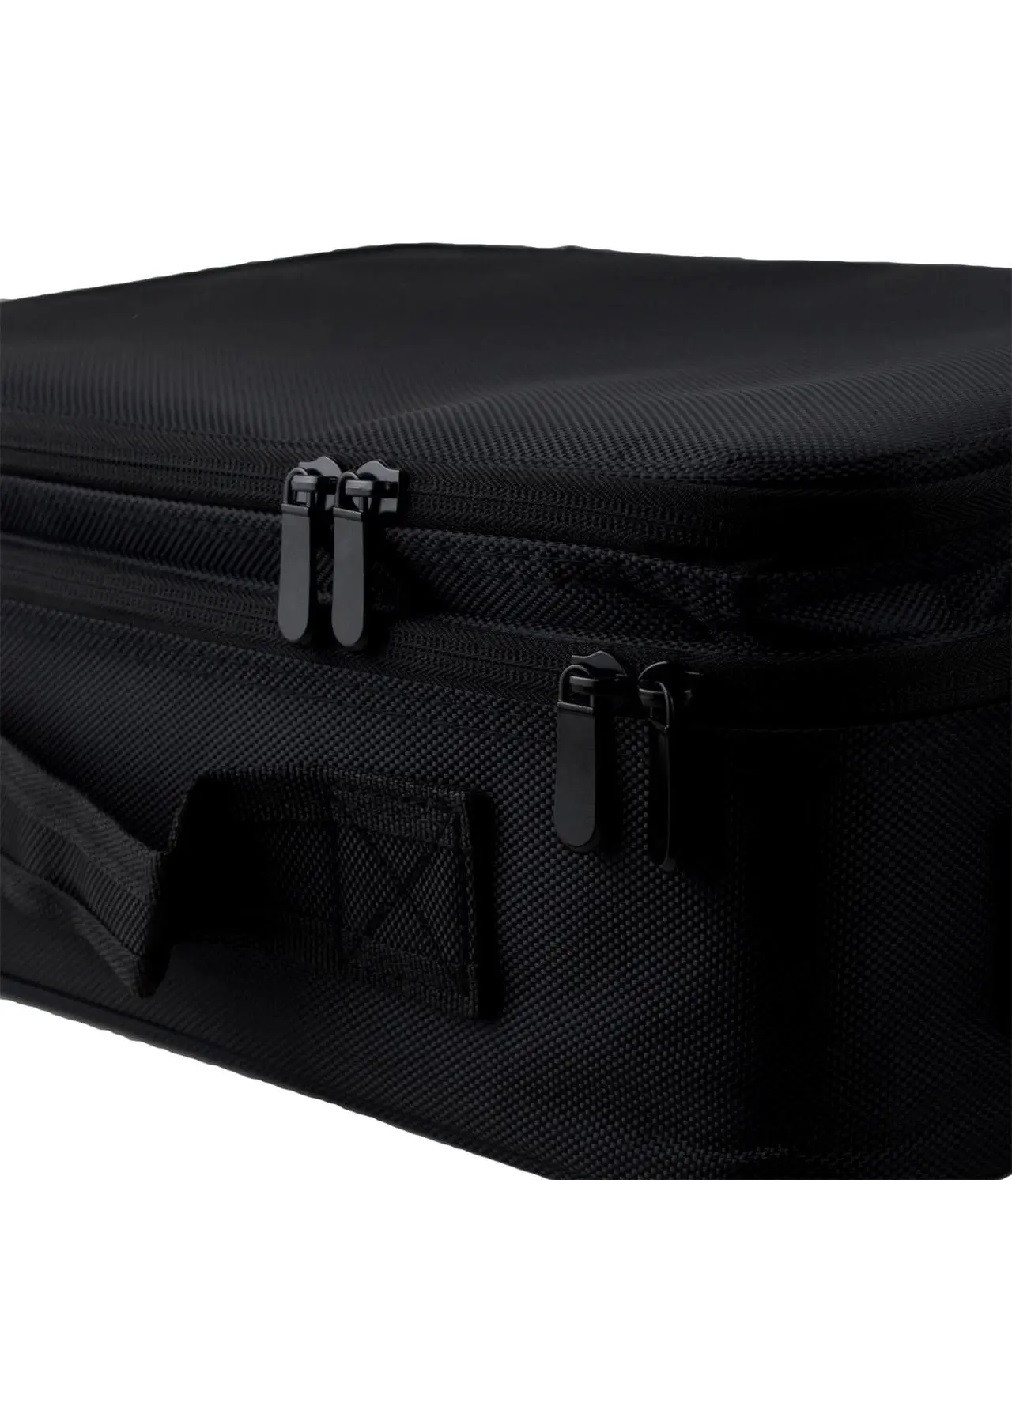 Органайзер бокс бьюти кейс косметичка чемоданчик сумка для хранения косметики и аксессуаров 37х26х13 см (475110-Prob) Черный Unbranded (262083041)